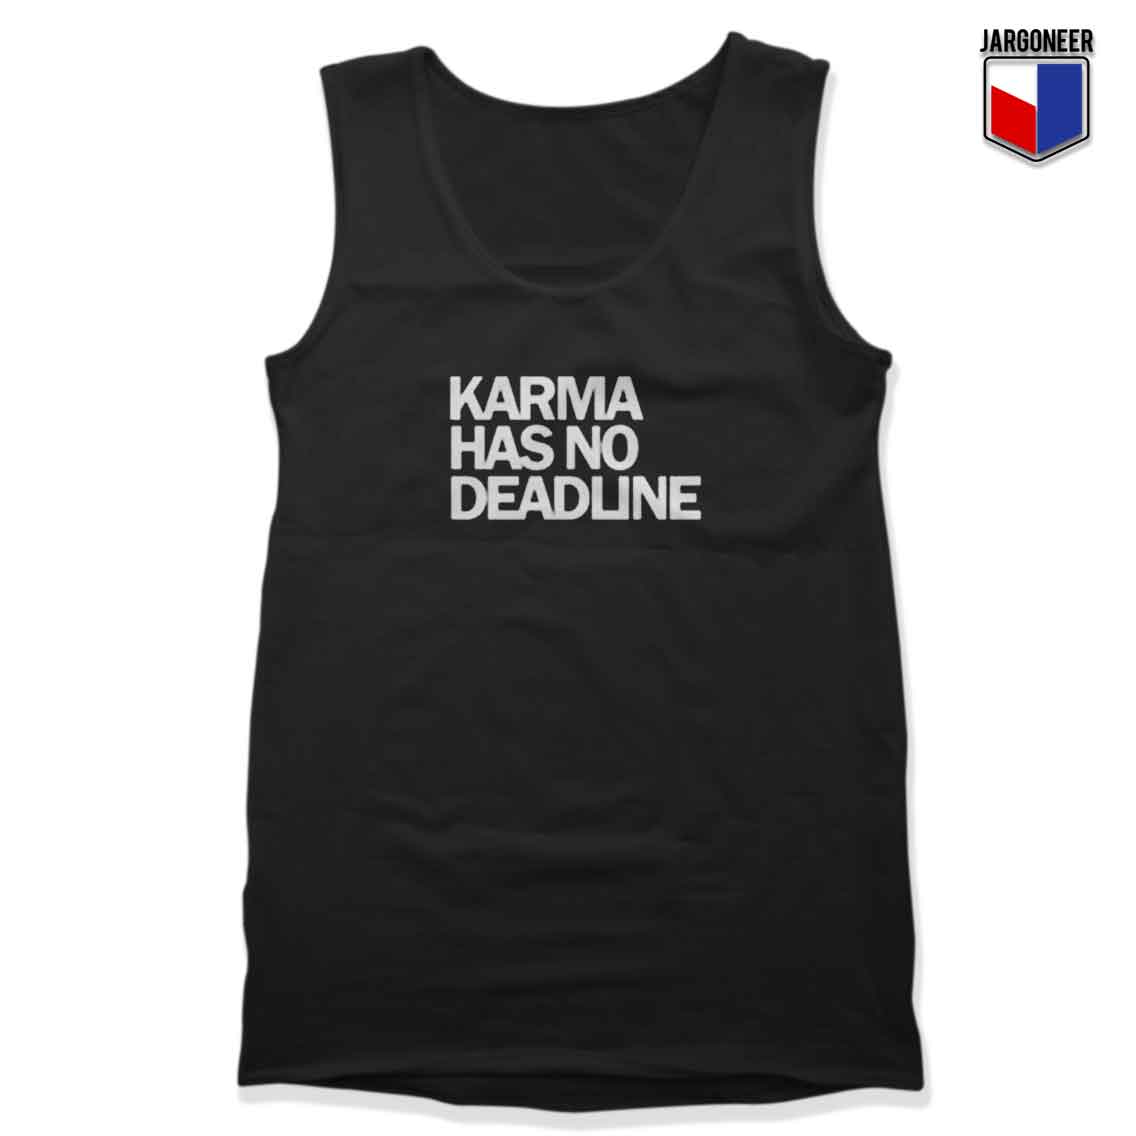 Karma Has No Deadline - Shop Unique Graphic Cool Shirt Designs